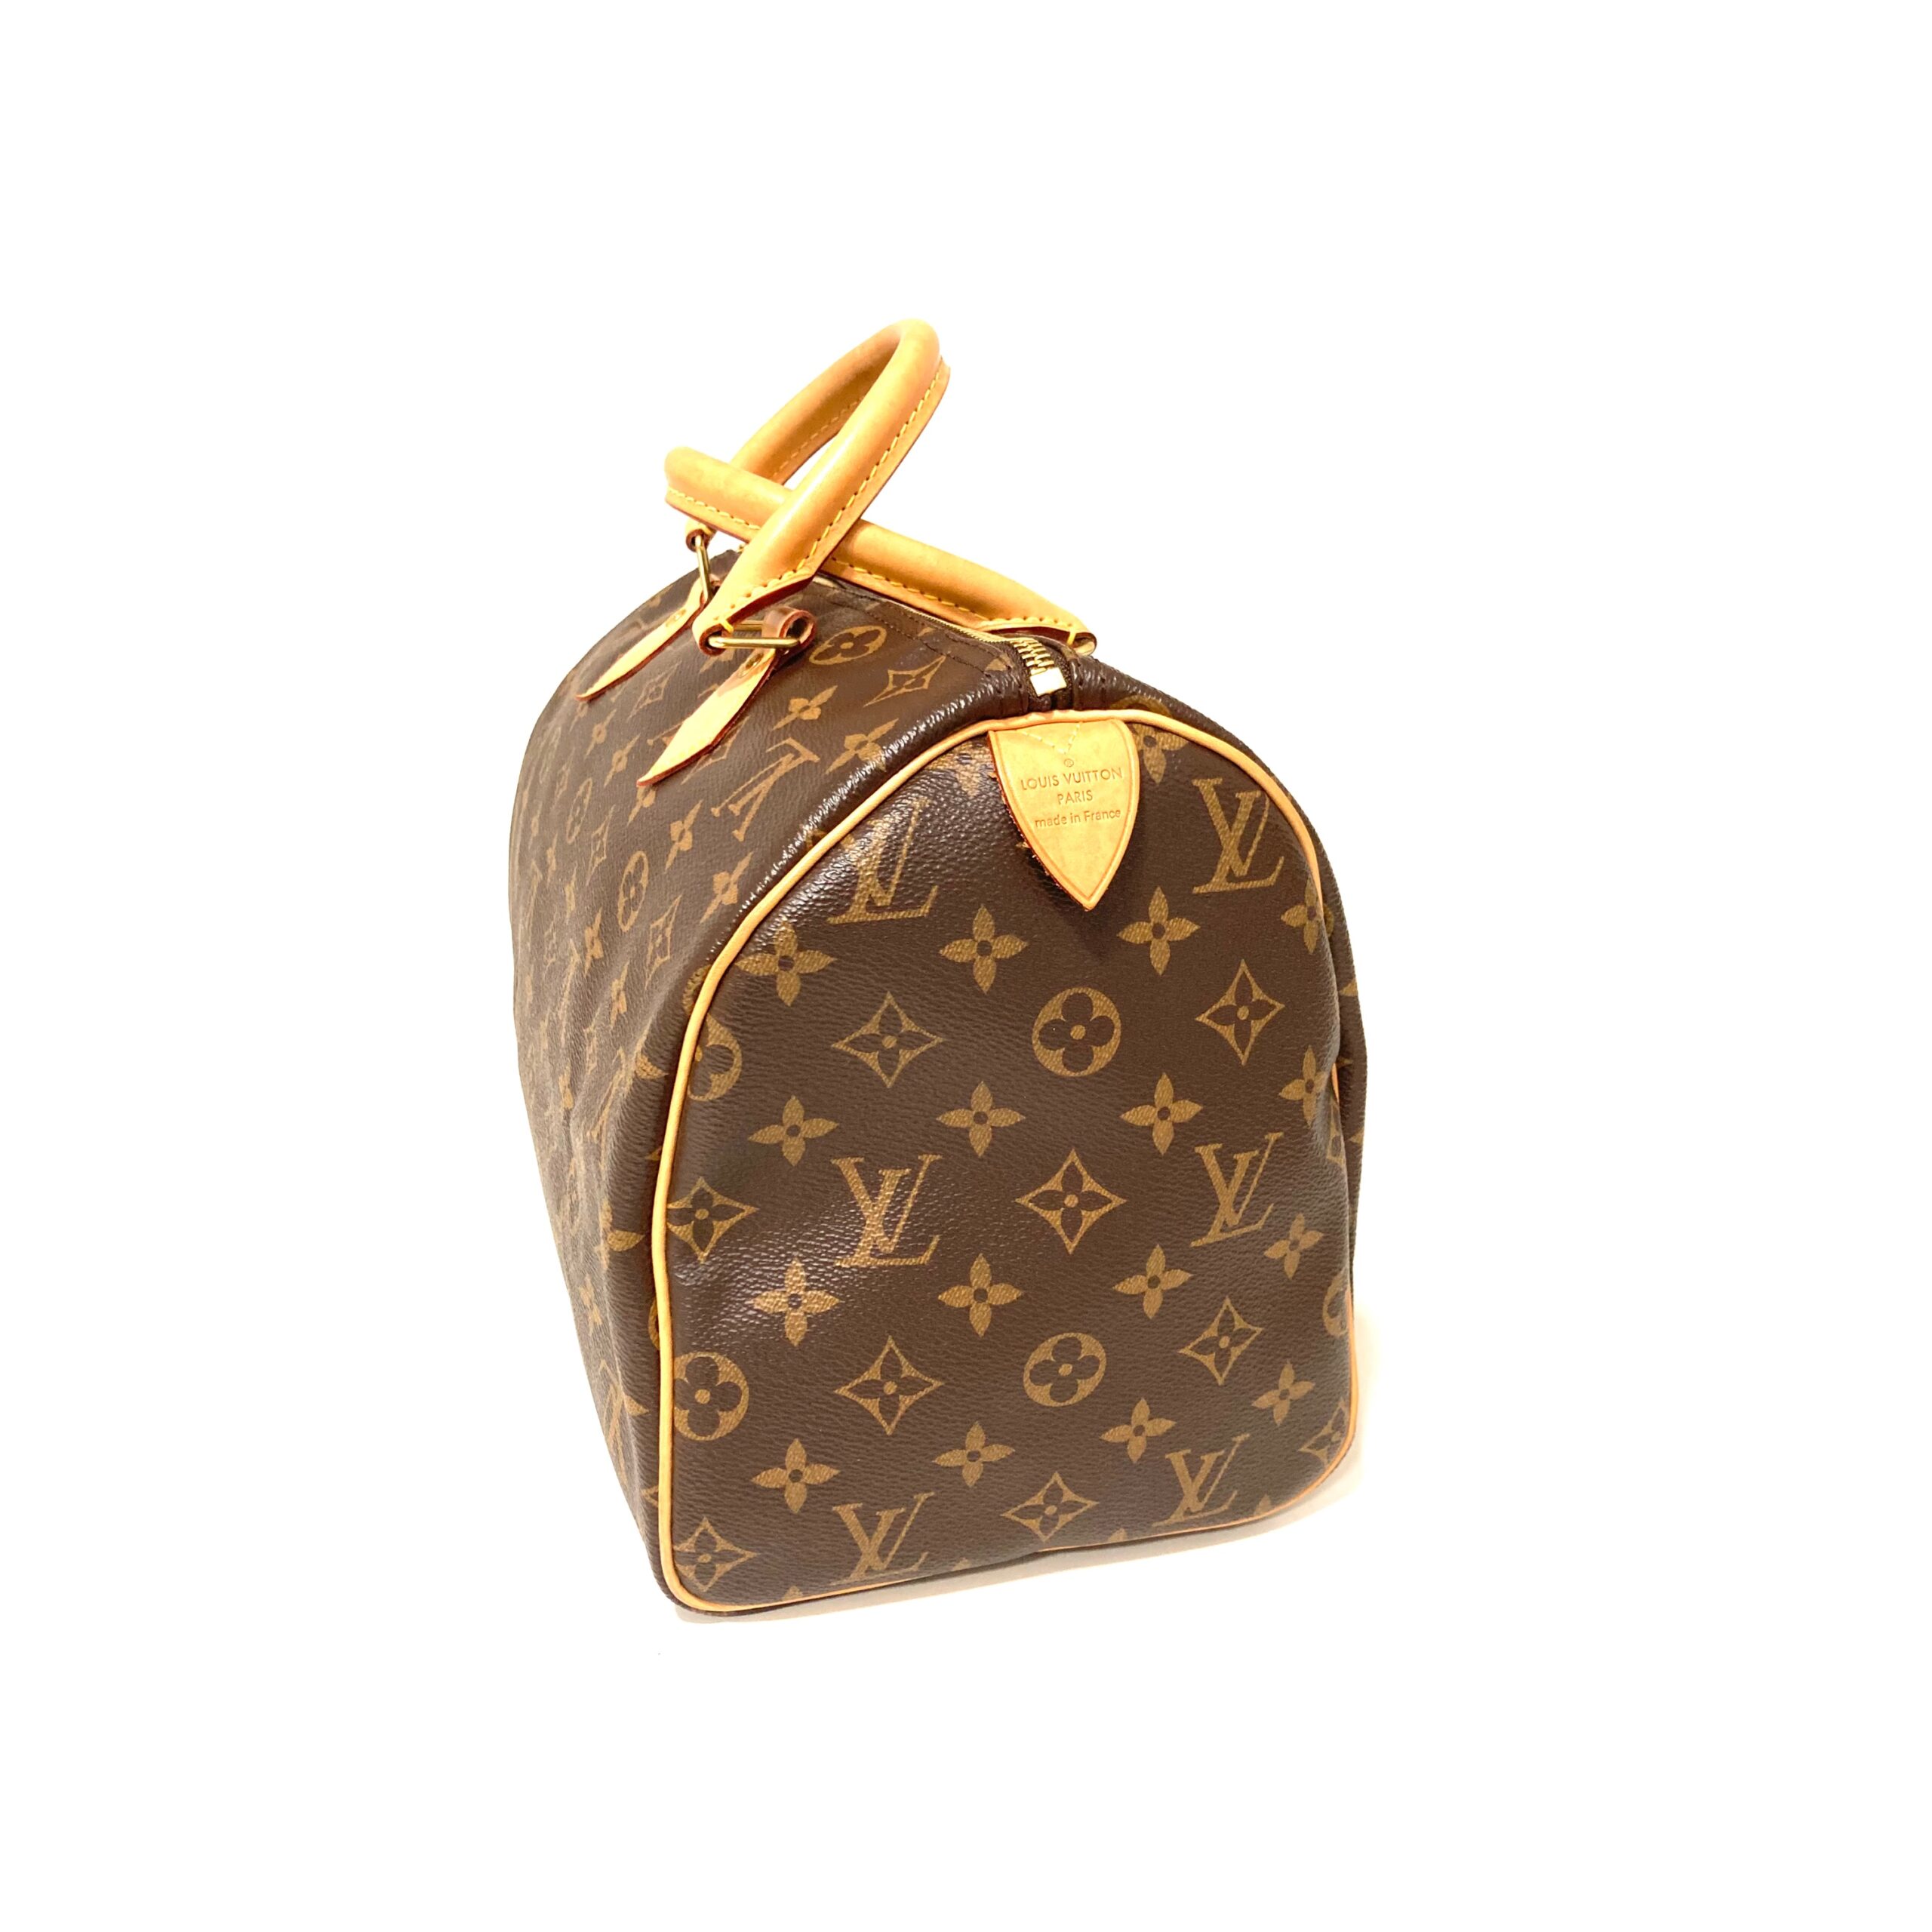 Louis Vuitton 𝐒𝐀𝐂 𝐏𝐋𝐀𝐓 𝐁𝐁 sheet music bag – Rachellebags